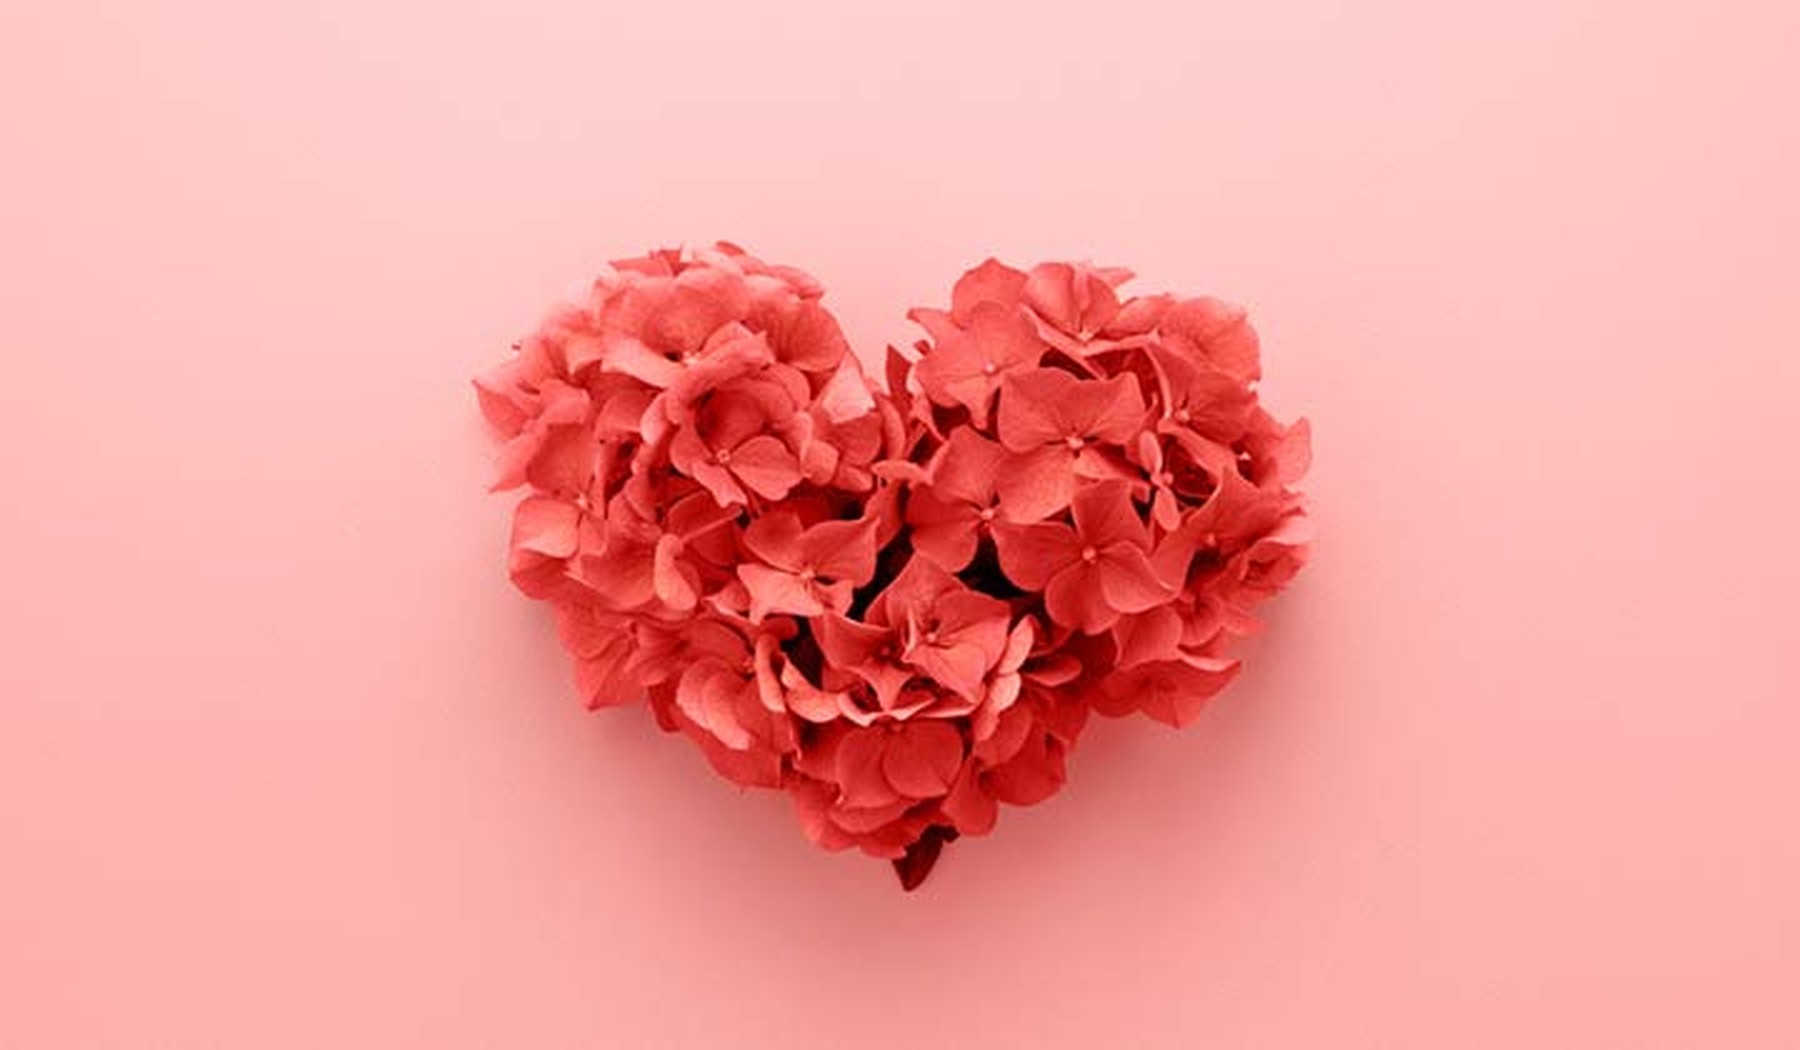 Fondo rosa palo en el que hay un corazón en 3D formado por flores magentas